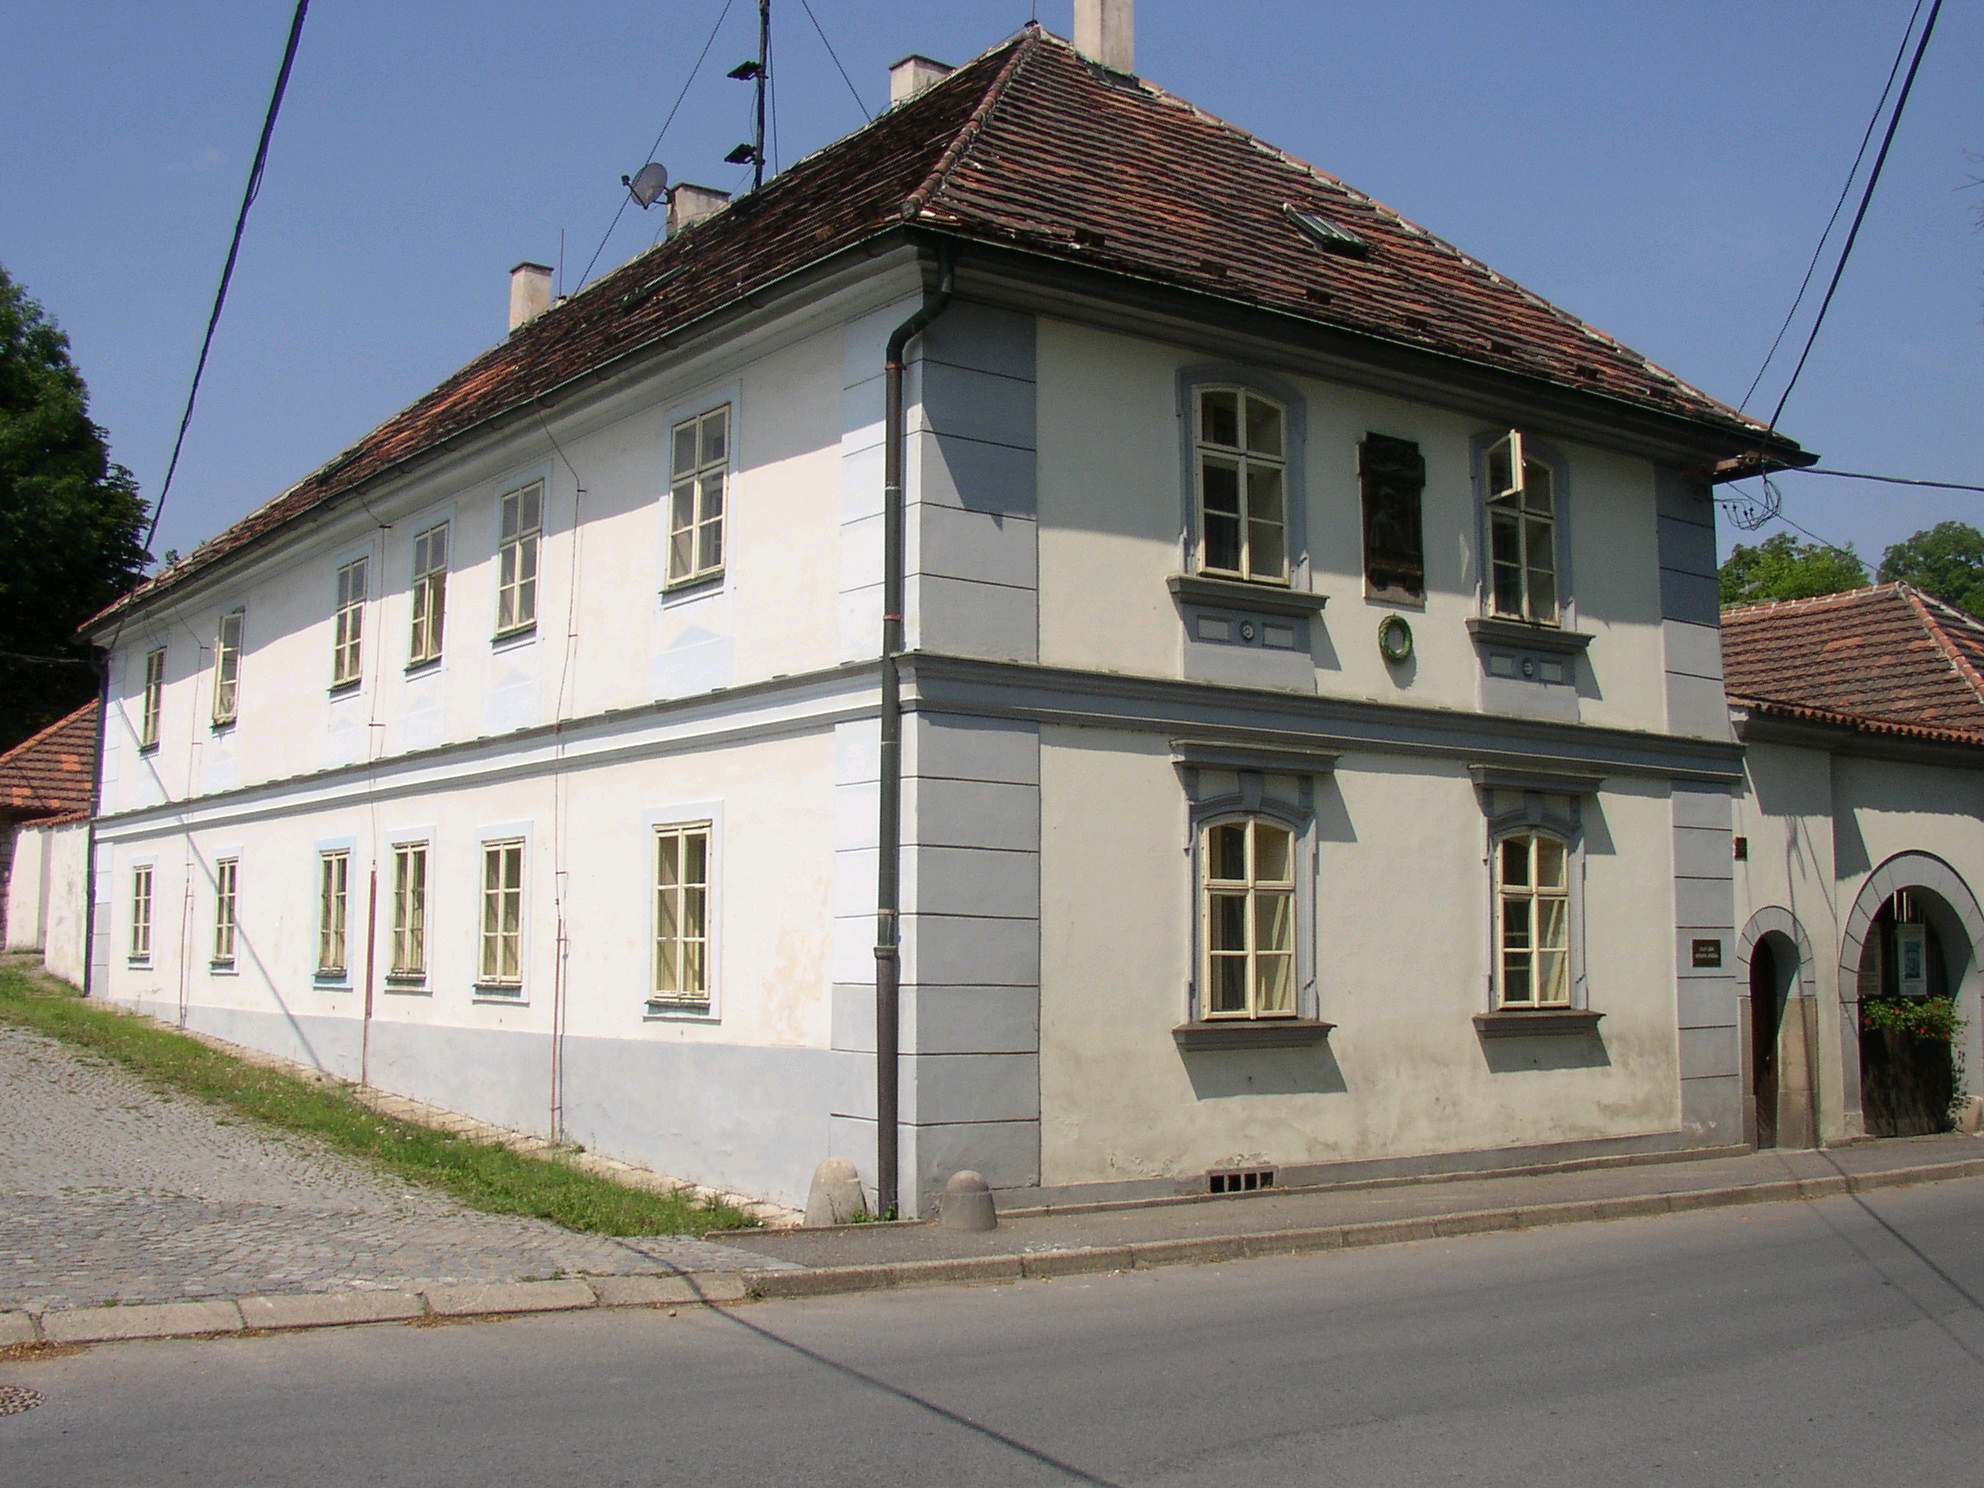 Nelahozeves birthhouse of Antonin Dvorak